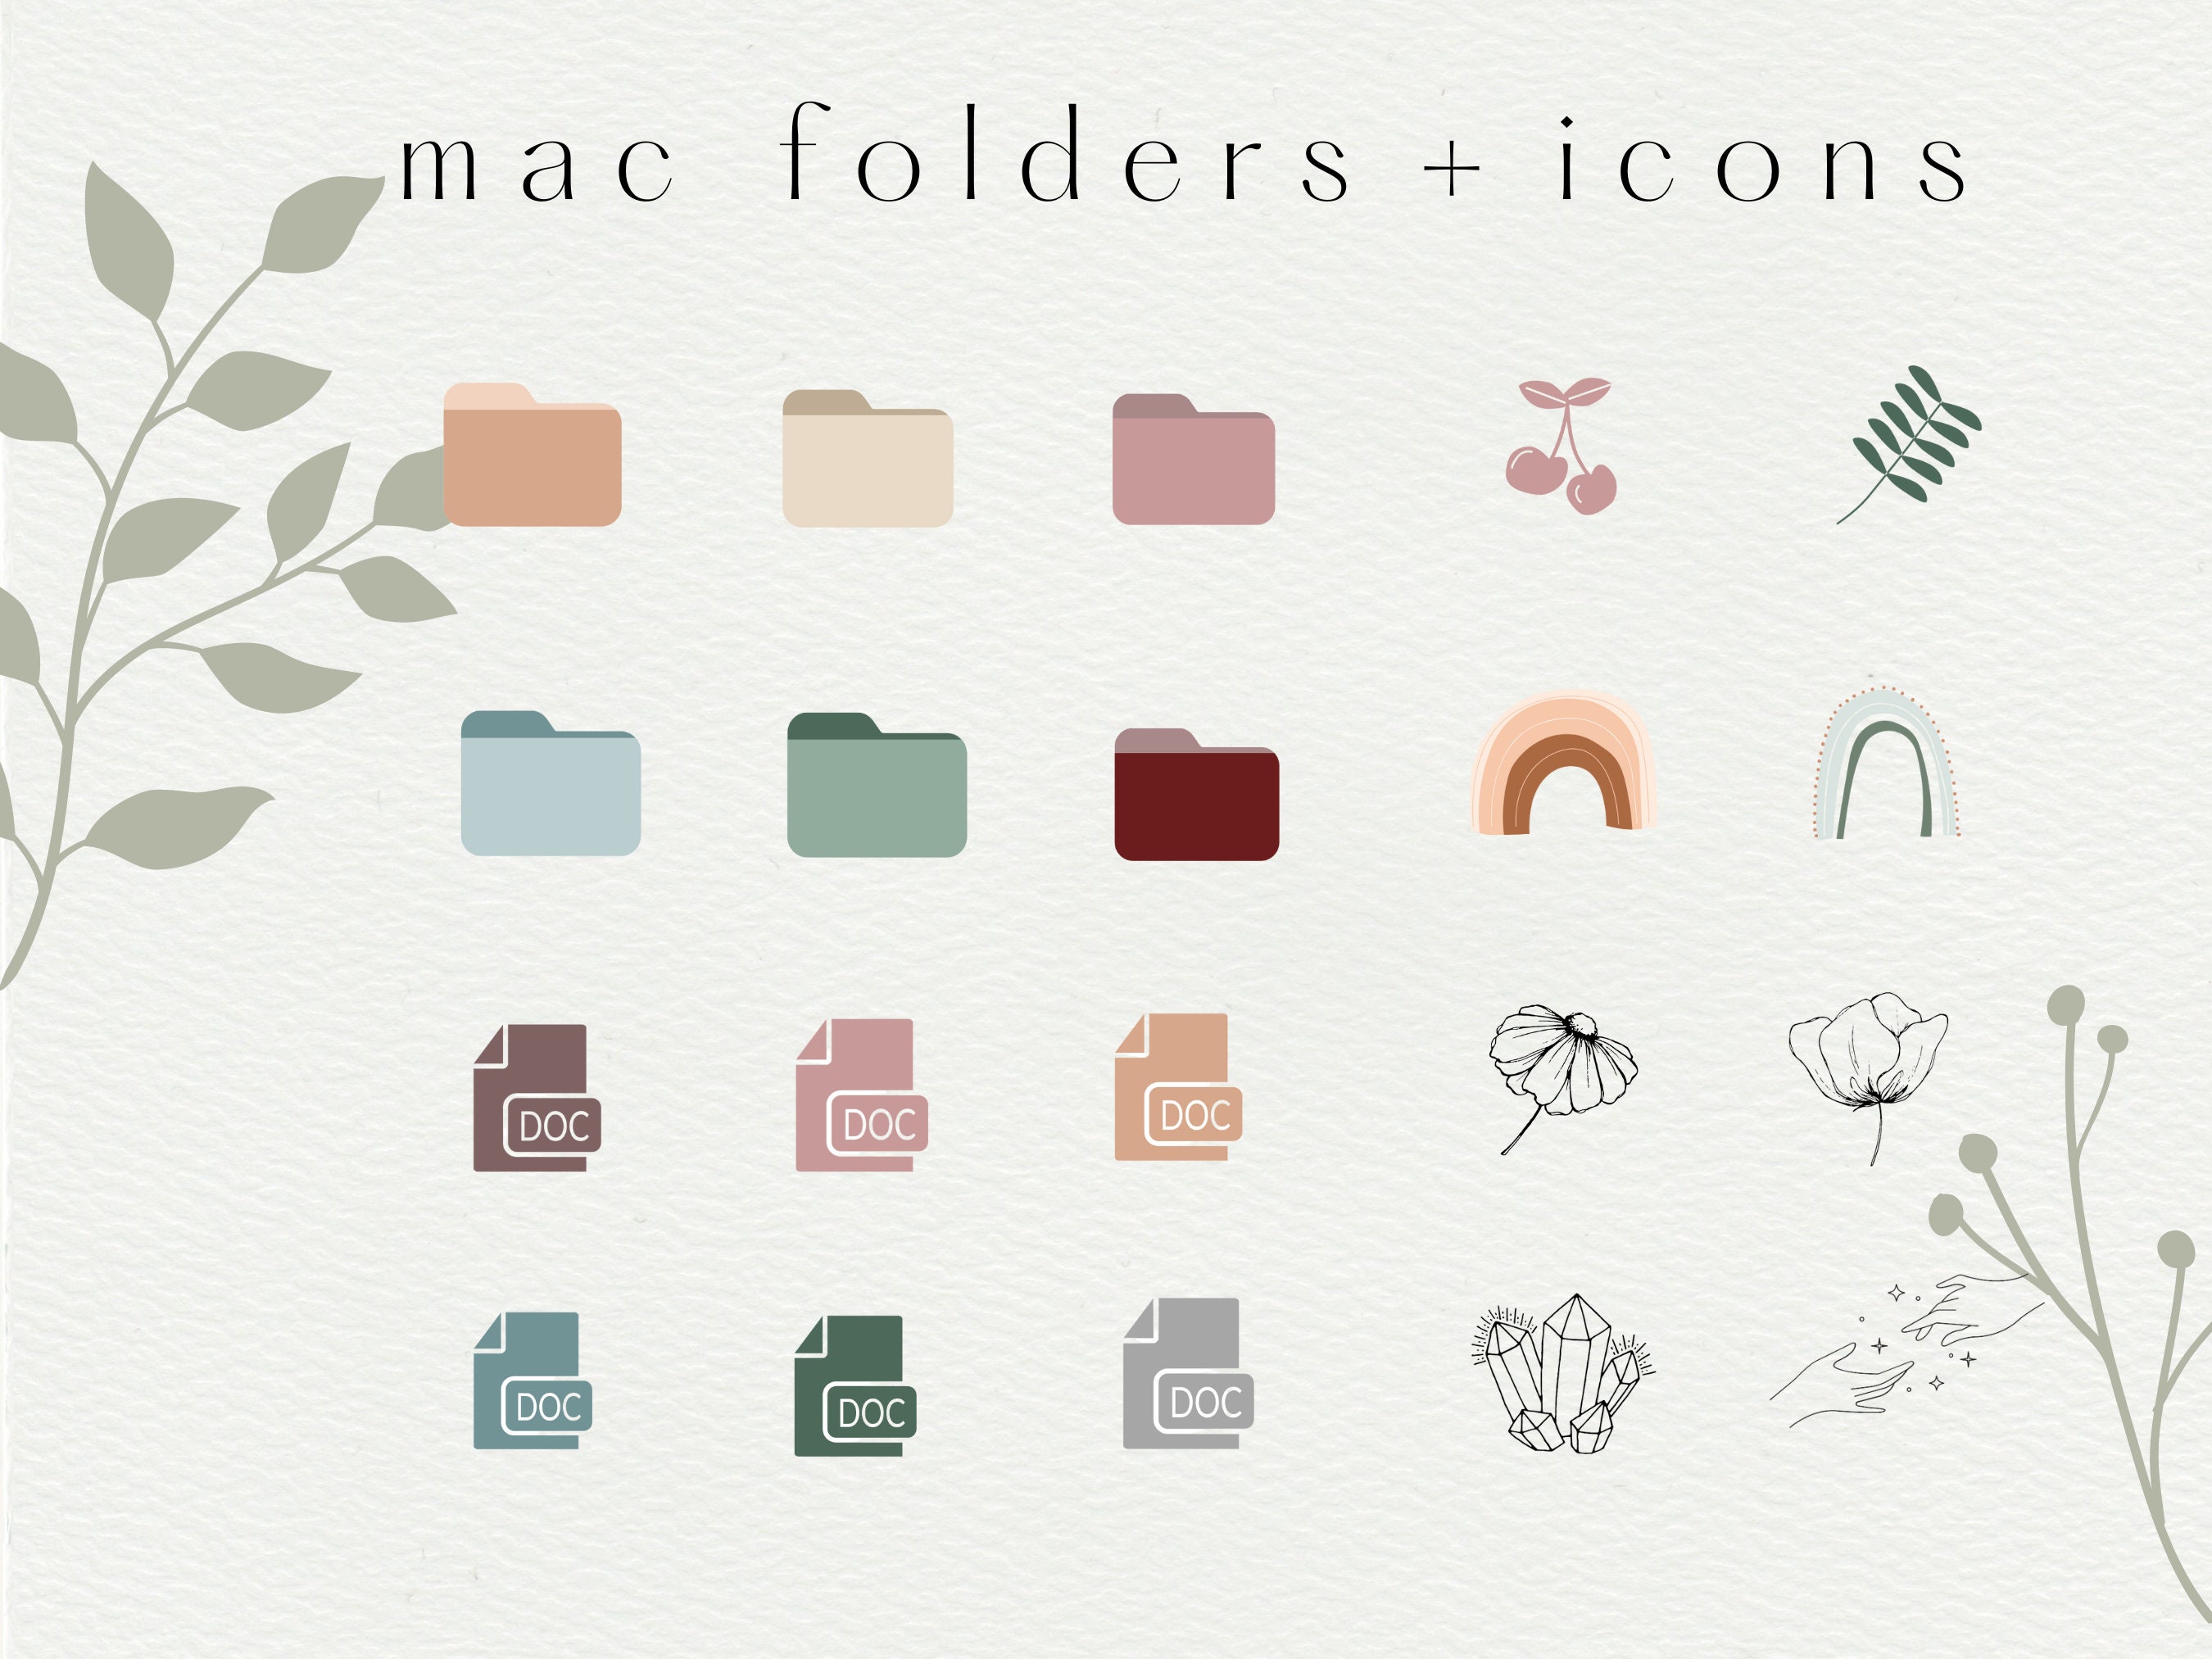 Desktop Icons Dream Catcher Folder Icon & Wallpaper Pack Boho 